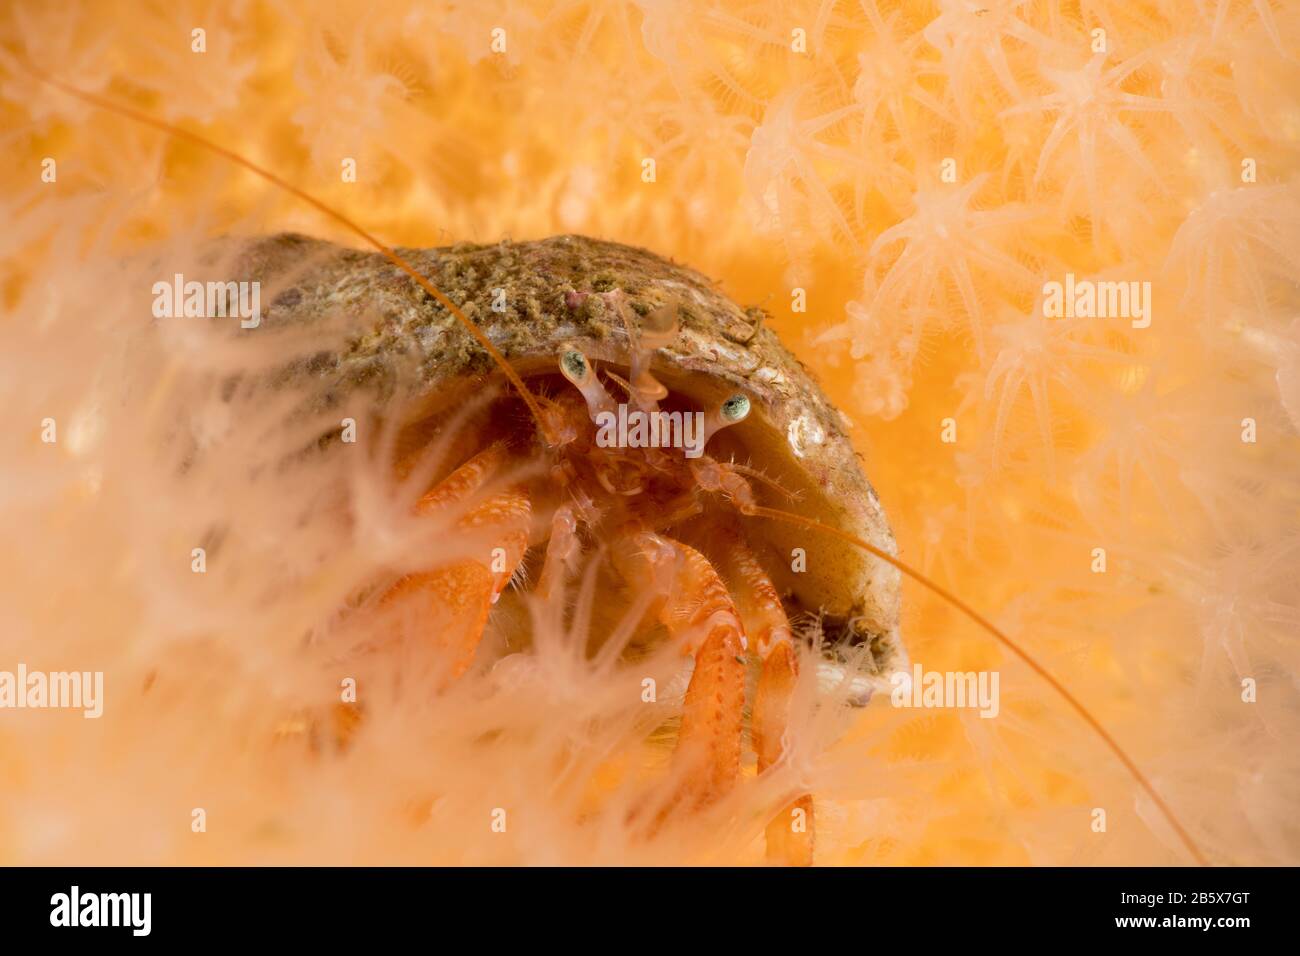 Common hermit crab Stock Photo